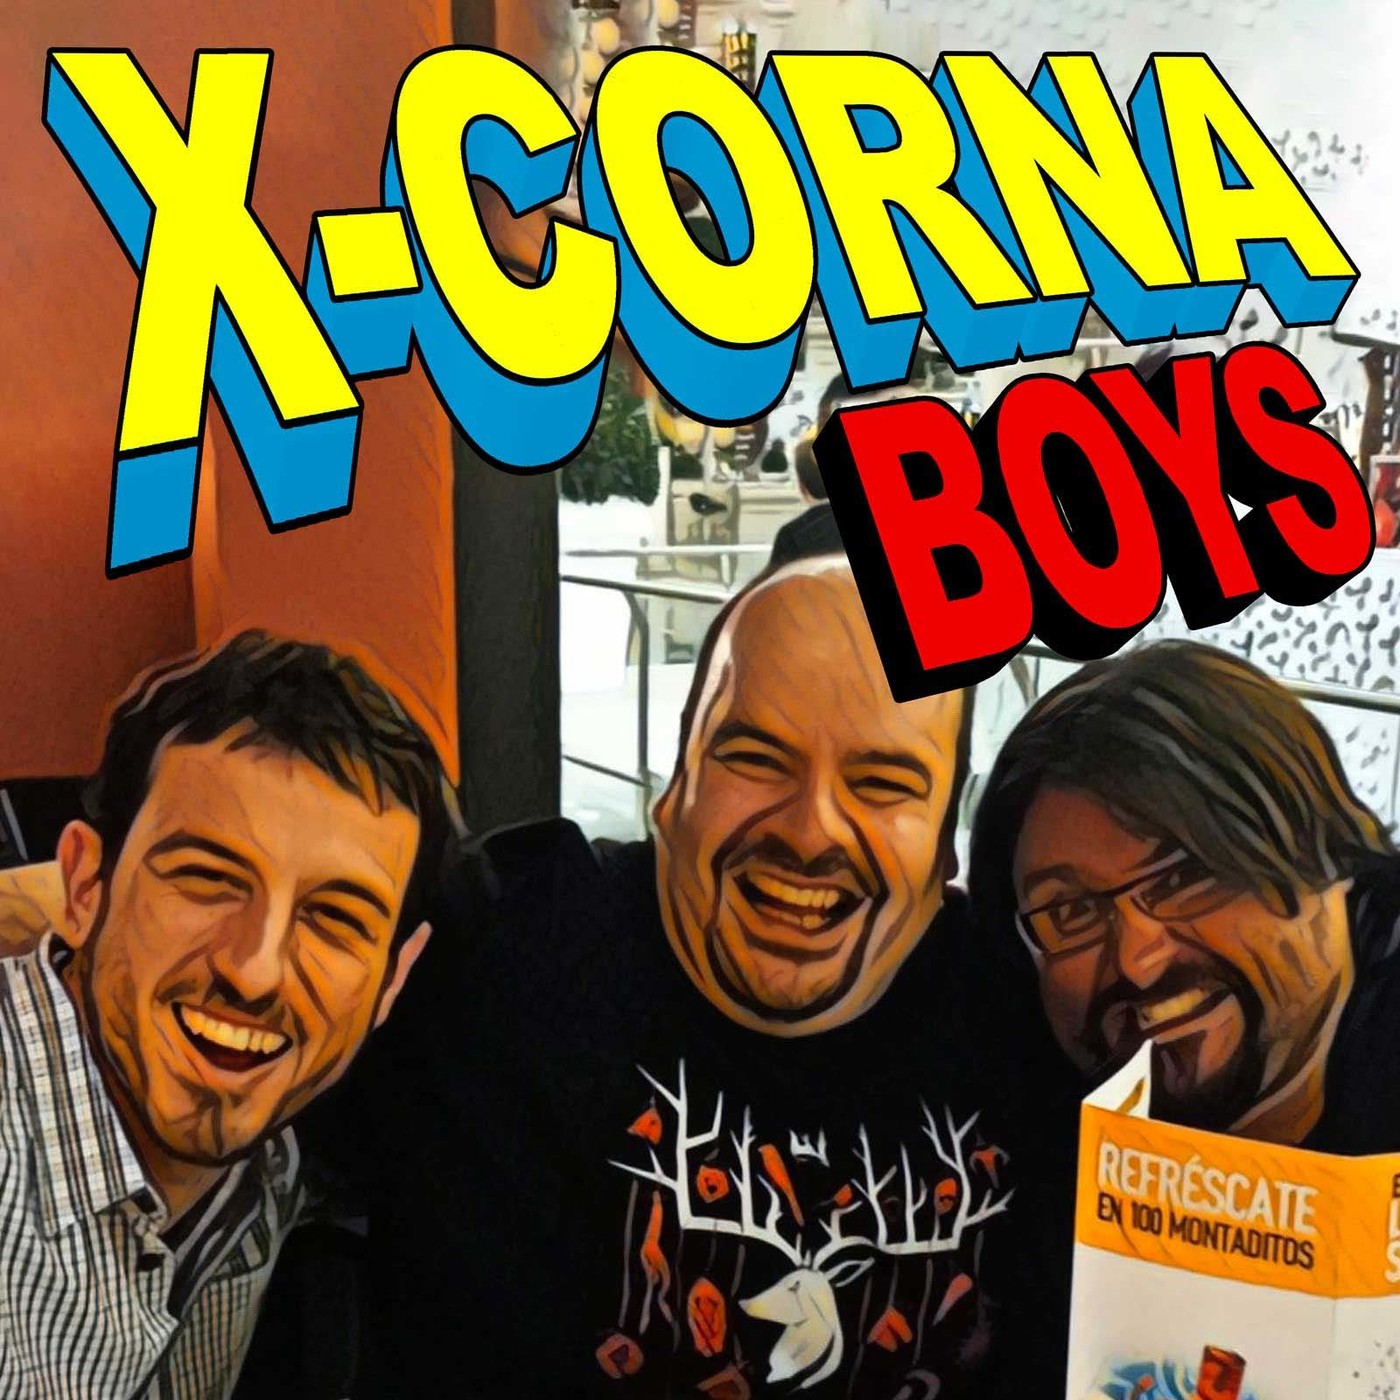 X-Corna Boys